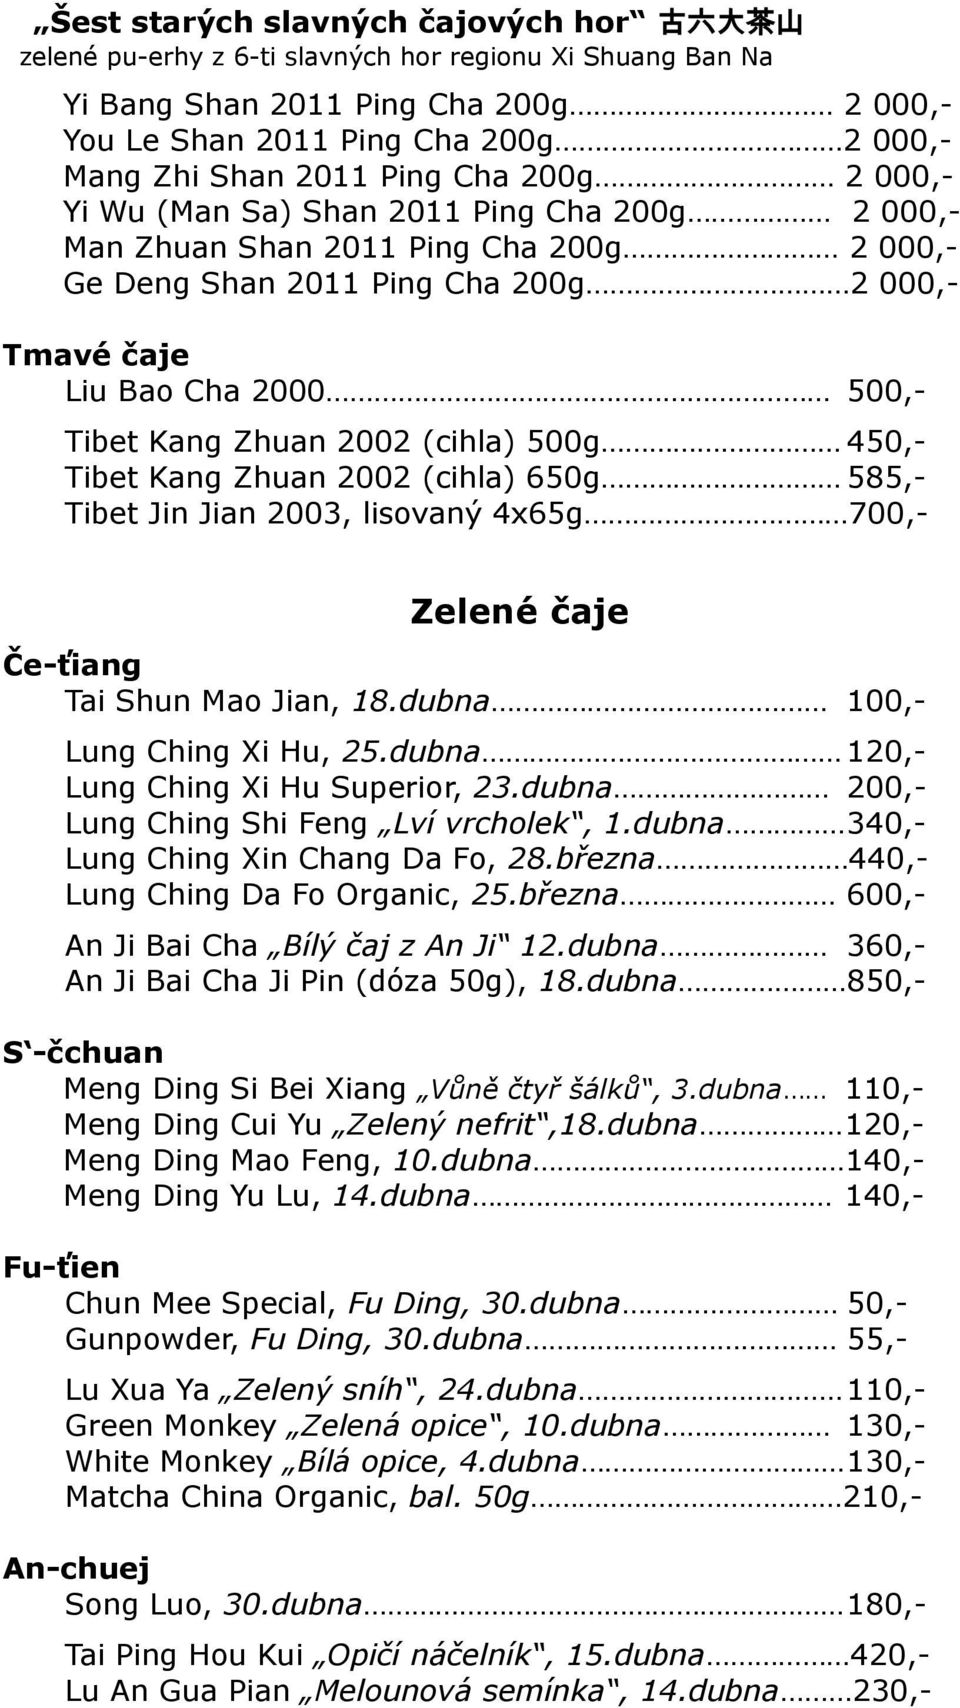 Kang Zhuan 2002 (cihla) 500g 450,- Tibet Kang Zhuan 2002 (cihla) 650g 585,- Tibet Jin Jian 2003, lisovaný 4x65g 700,- Zelené čaje Če-ťiang Tai Shun Mao Jian, 18.dubna 100,- Lung Ching Xi Hu, 25.